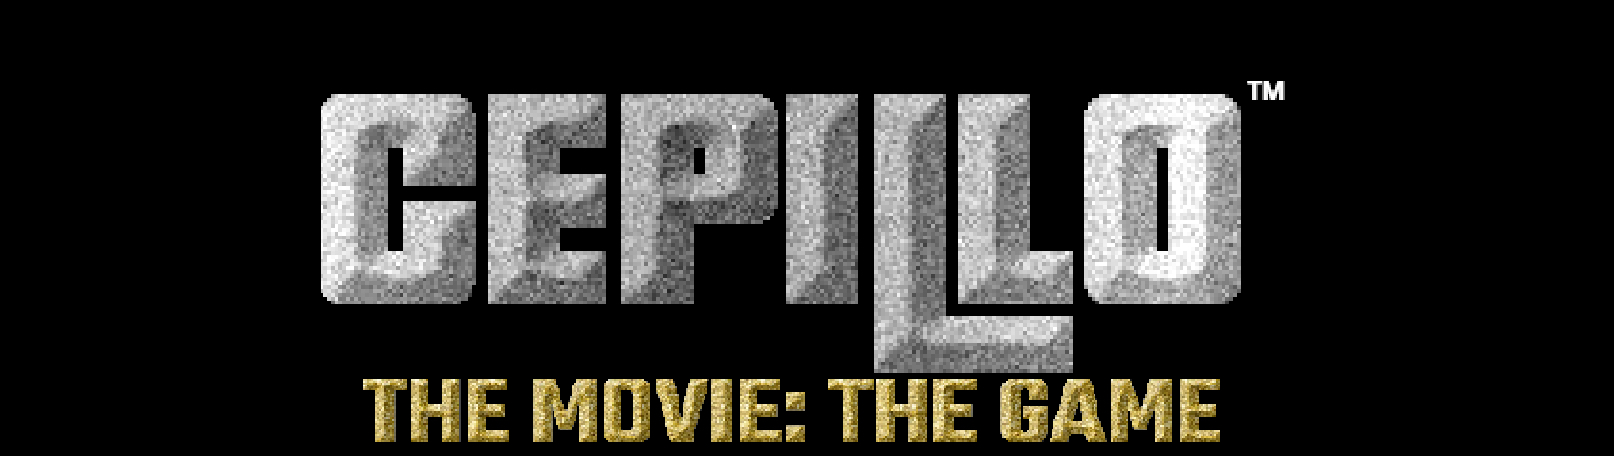 CEPILLO: The Movie The Game